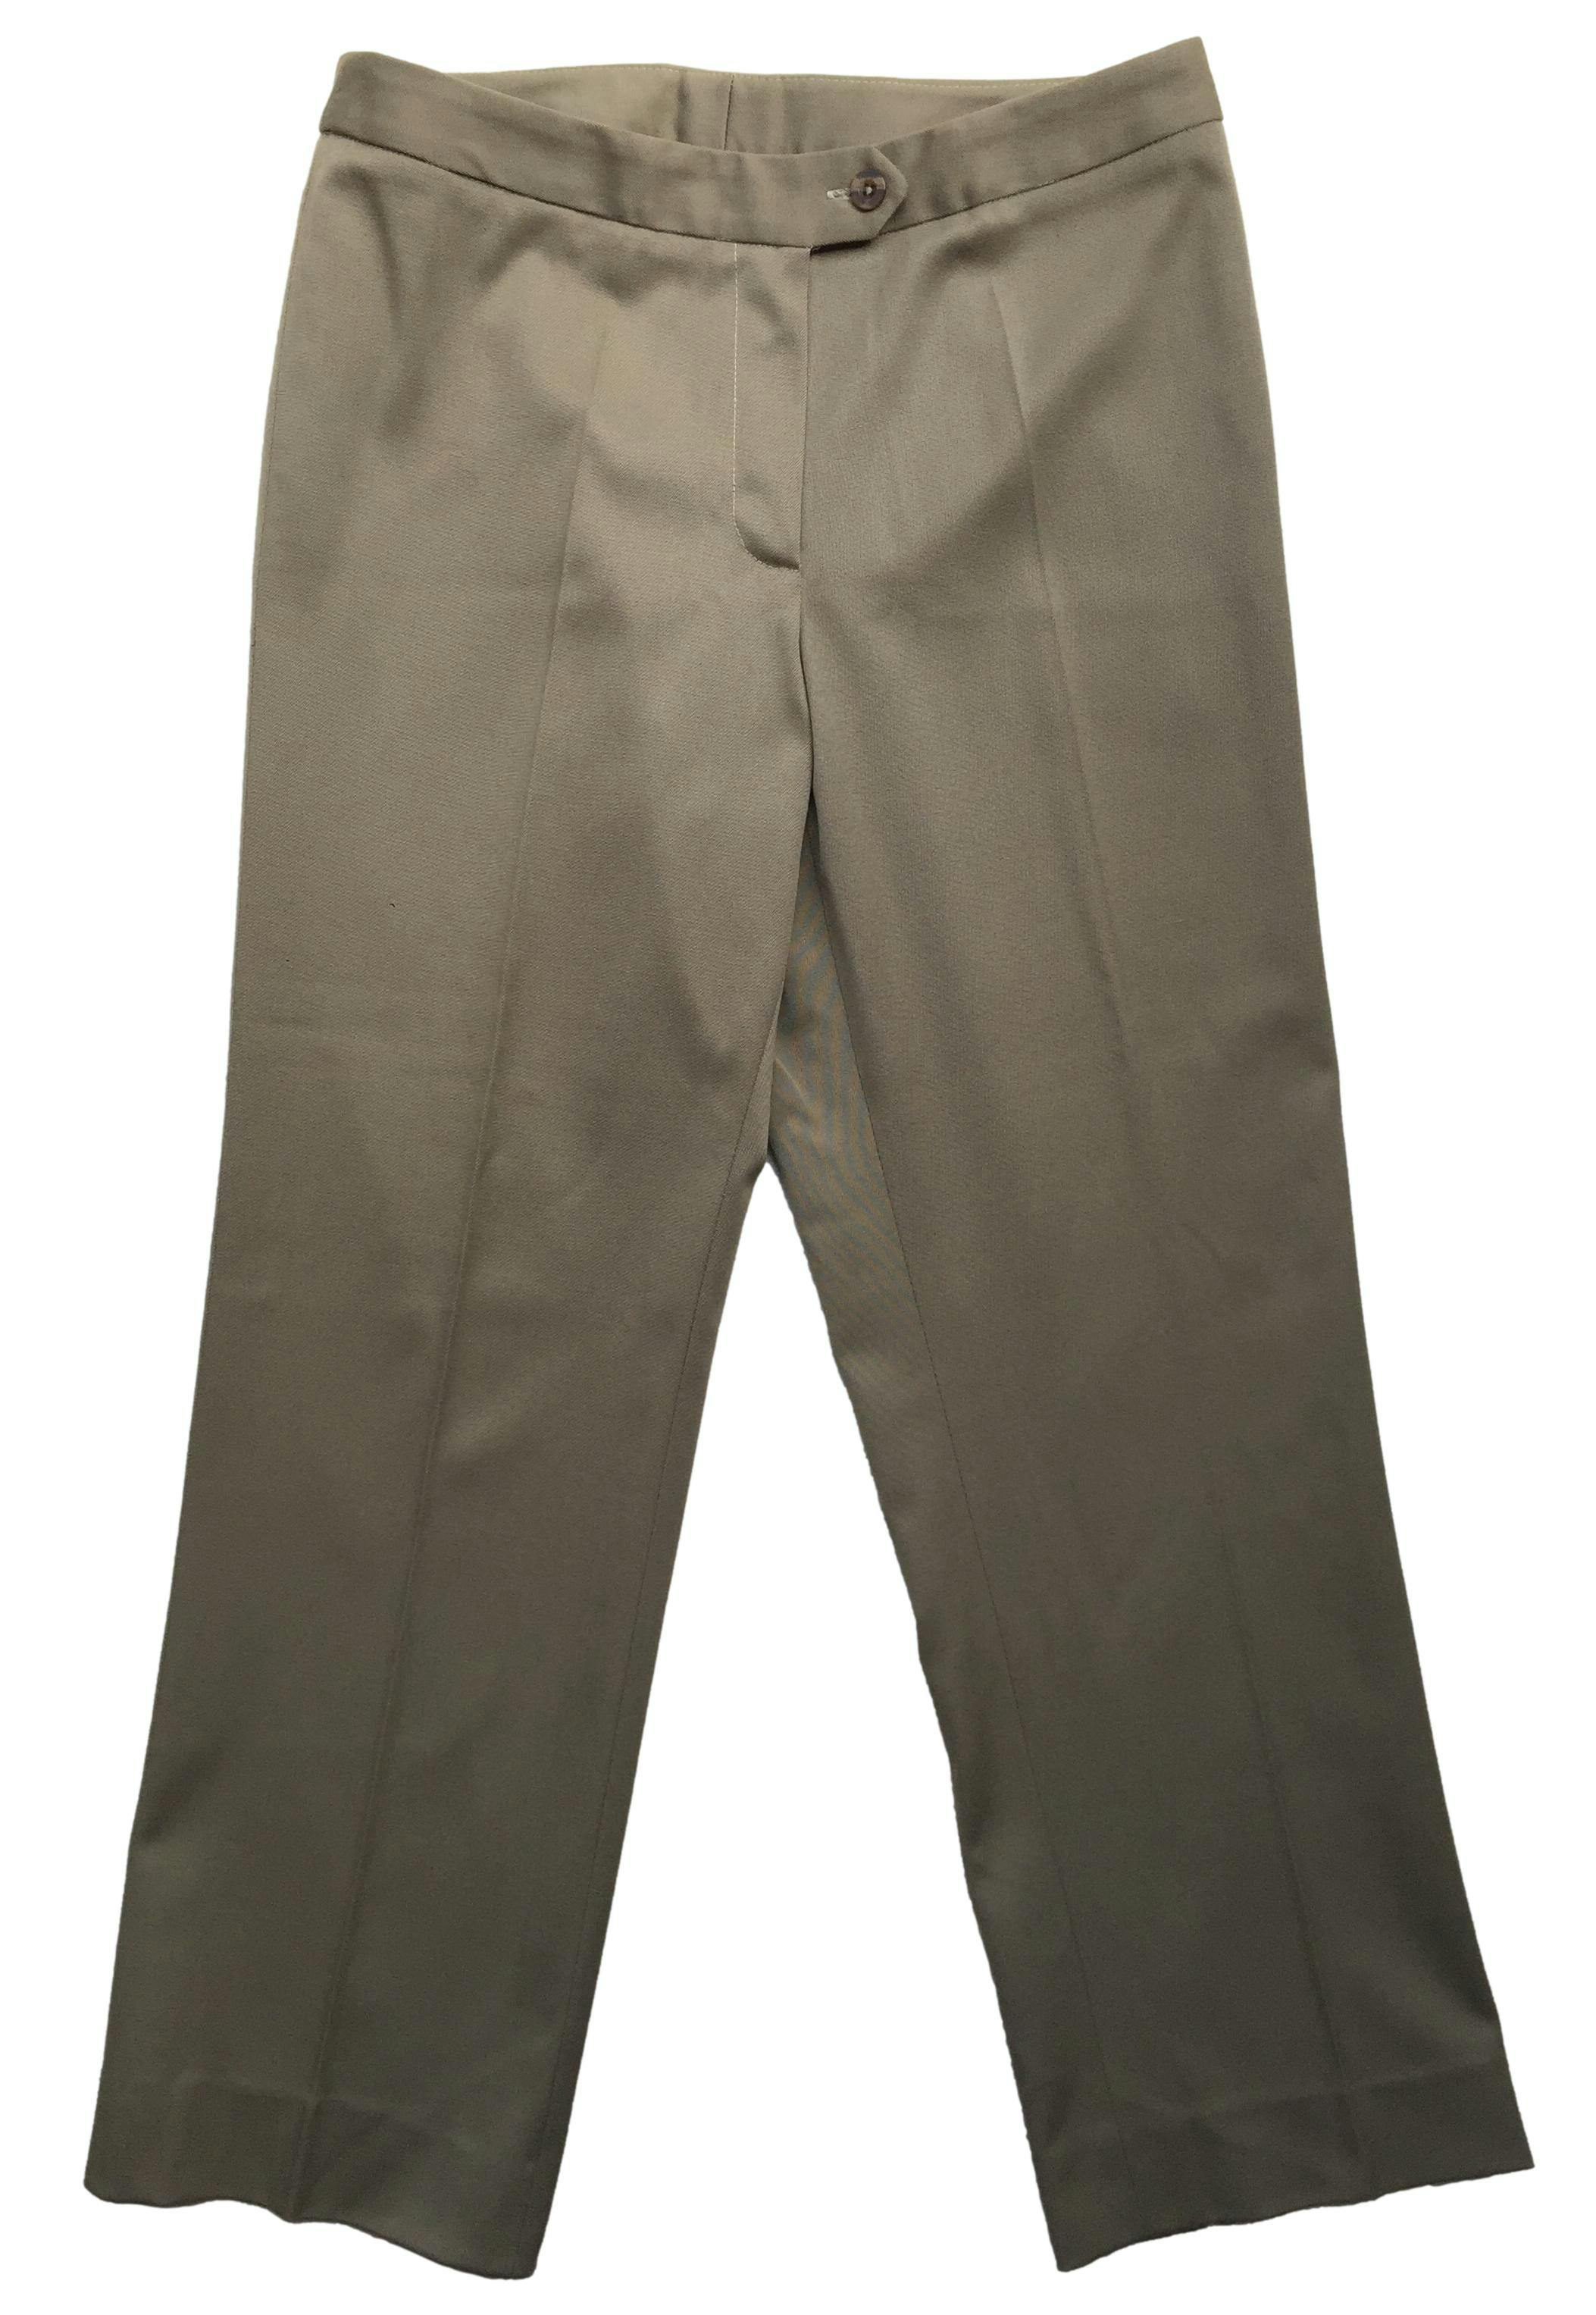 Pantalón sastre color camel con pierna recta y botón frontal. Cintura 78cm, Largo 92cm.